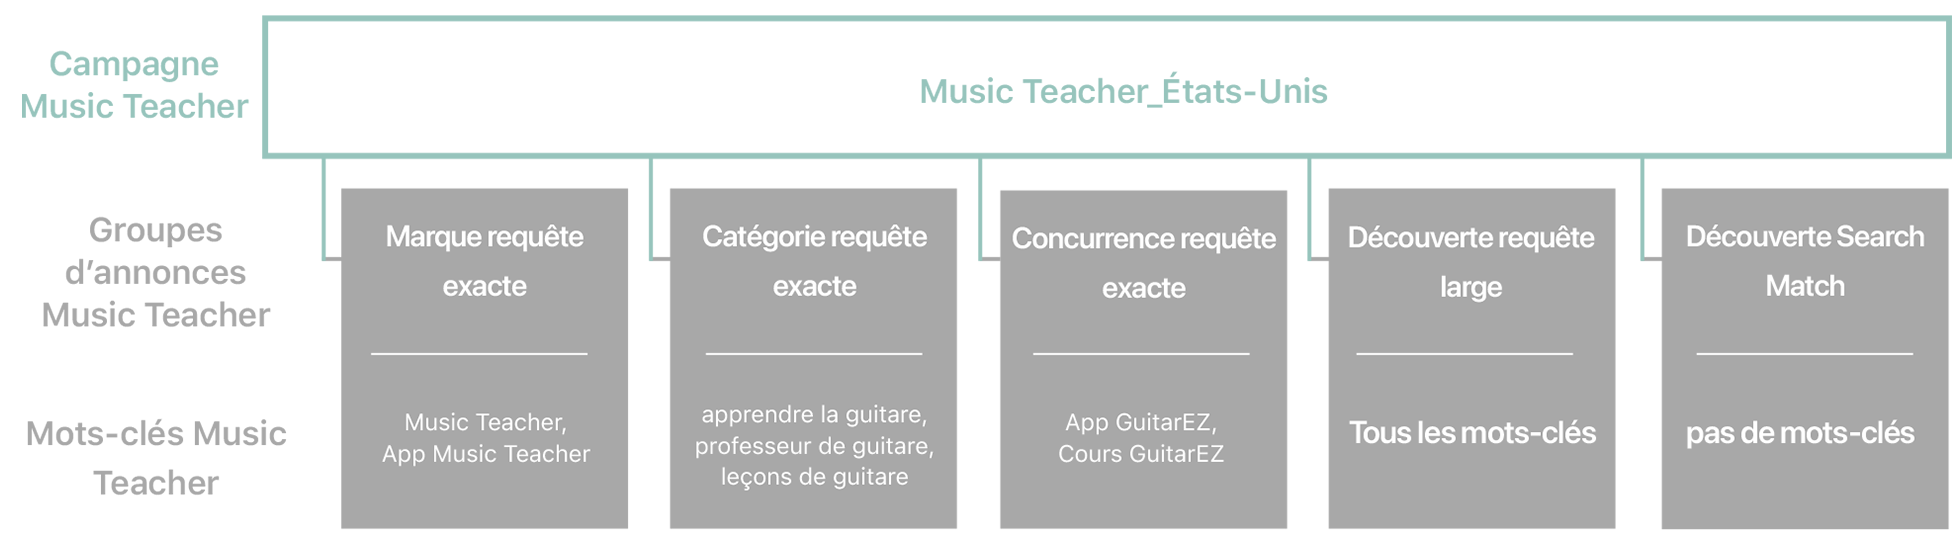 Diagramme des types de campagne et des groupes d’annonces associés, et suggestions de mots-clés et conseils pour l’exemple d’app Music Teacher. 